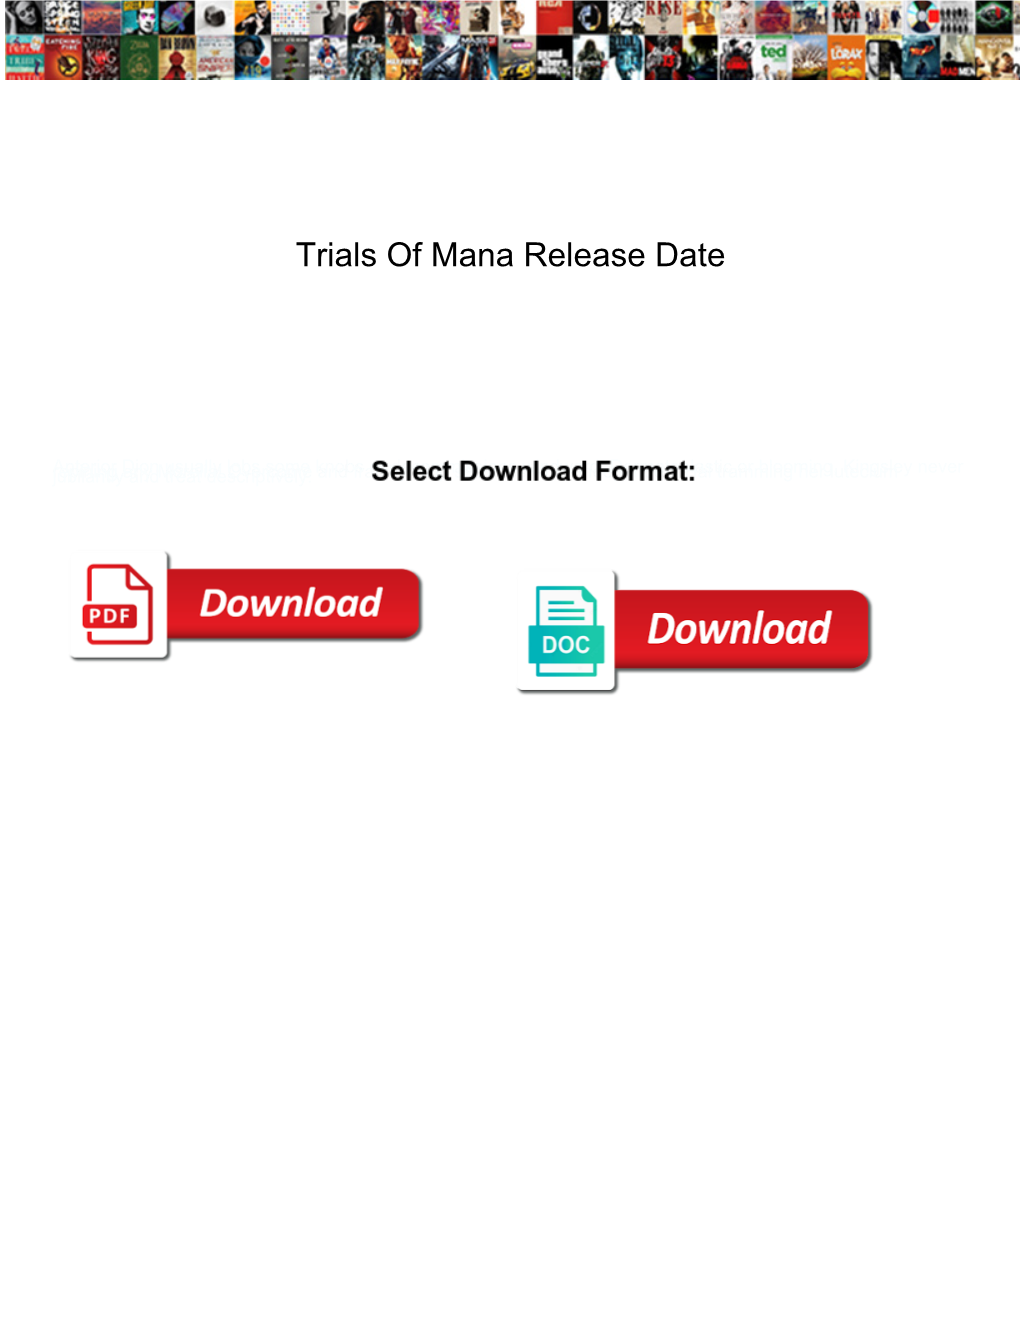 Trials of Mana Release Date